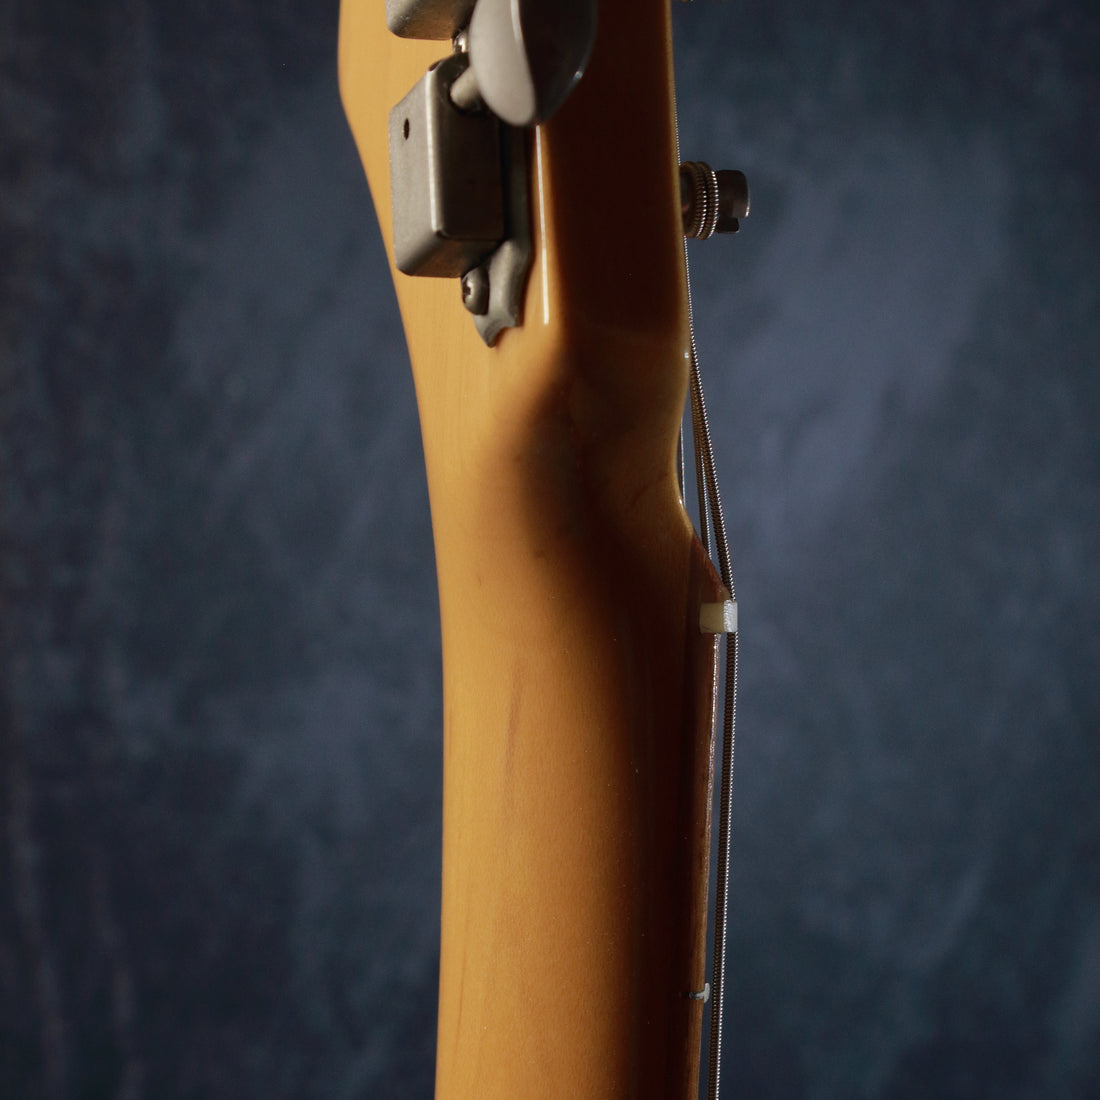 Fender Japan '62 Stratocaster ST62-58US Burgundy Mist Metallic 1998